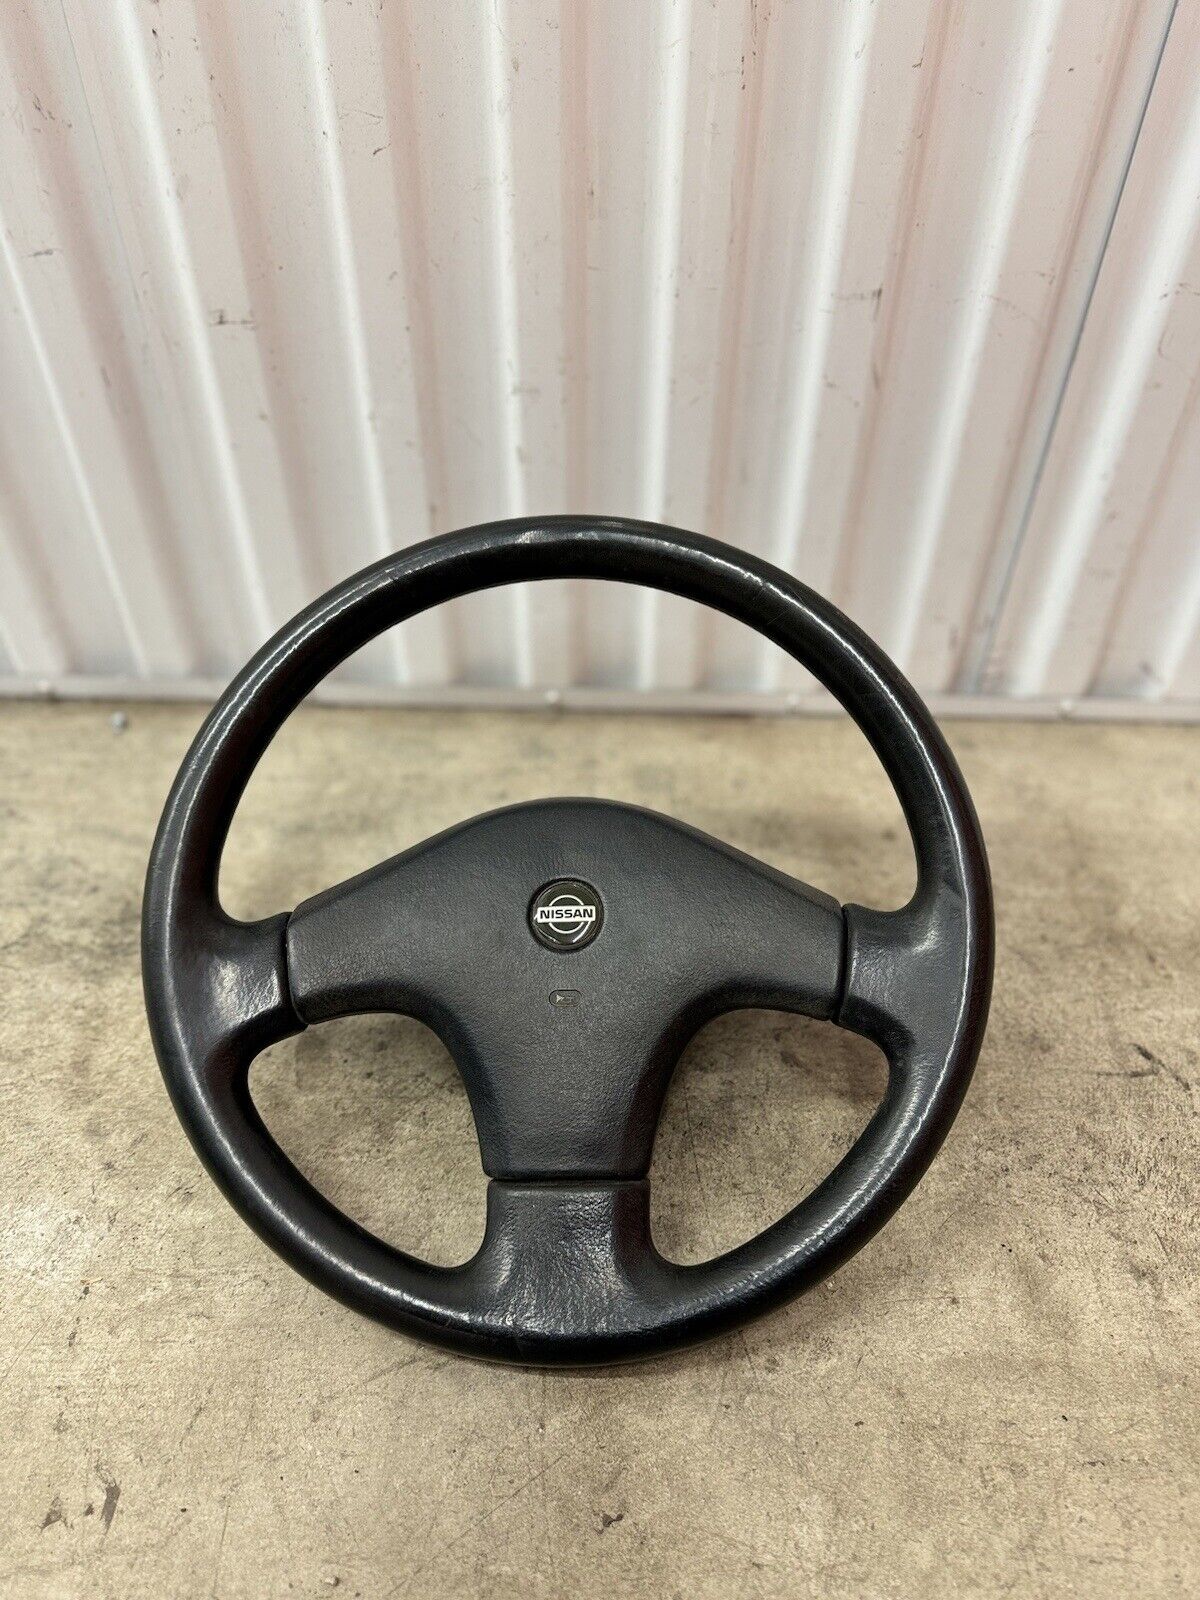 89-94 Nissan 240sx S13 chuki steering wheel